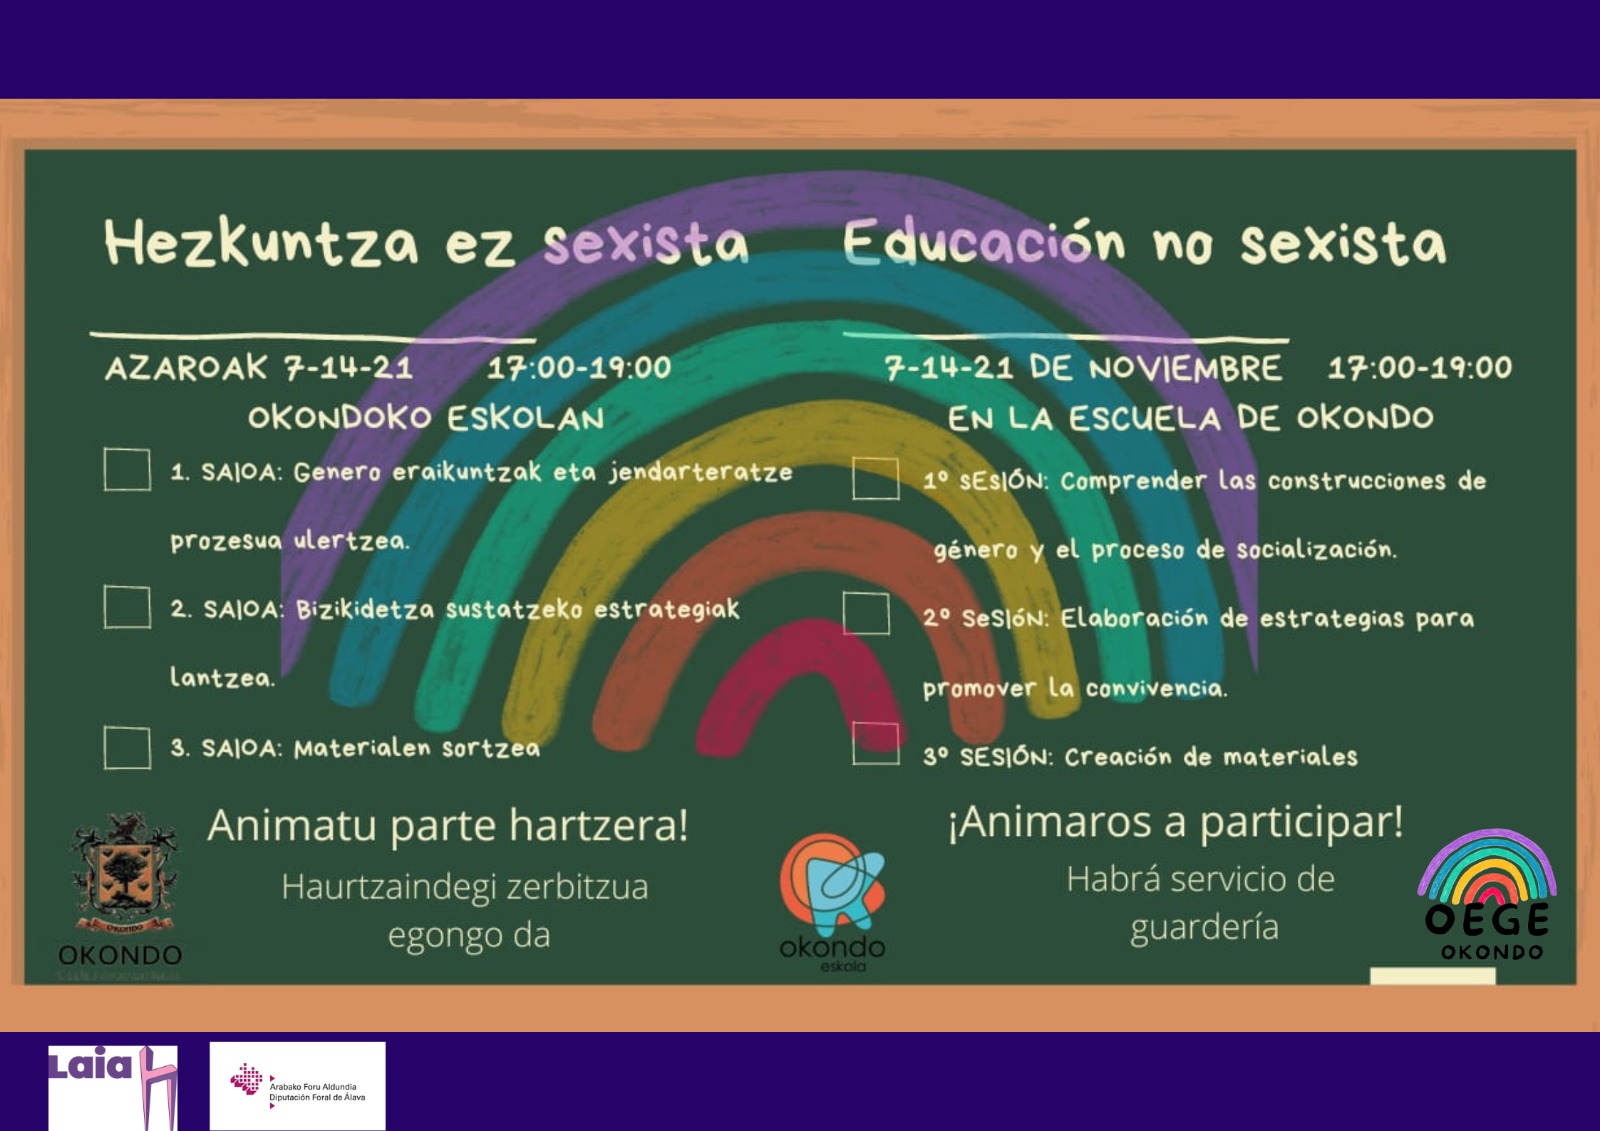 EDUCACIÓN NO SEXISTA. 7-14-21 DE NOVIEMBRE